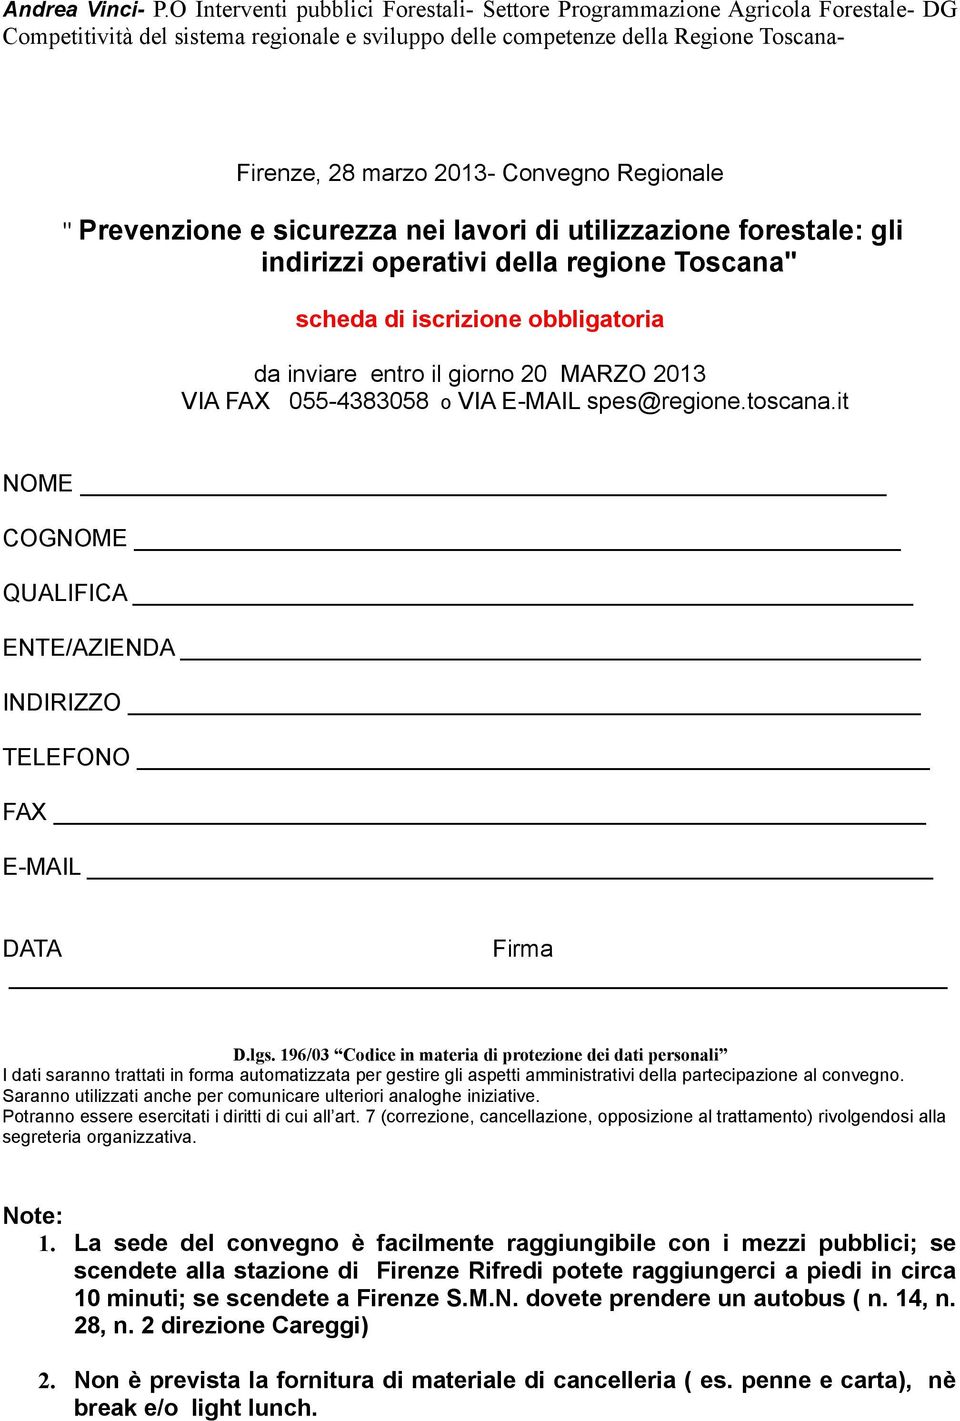 Prevenzione e sicurezza nei lavori di utilizzazione forestale: gli indirizzi operativi della regione Toscana" scheda di iscrizione obbligatoria da inviare entro il giorno 20 MARZO 2013 VIA FAX